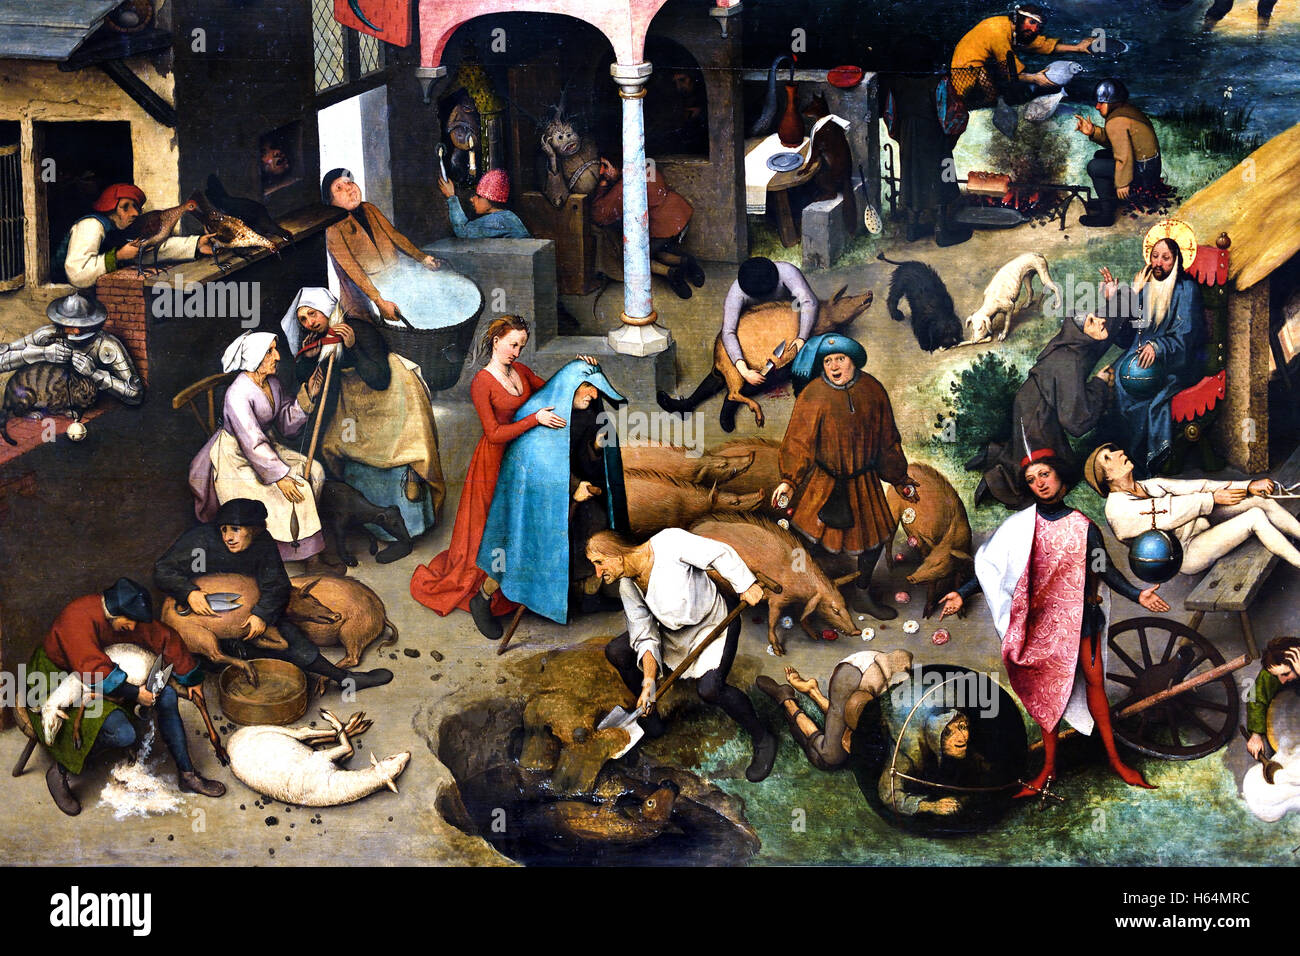 Les proverbes néerlandais Pieter Brueghel 1559 Bruegel ( ) l'Aîné Breda1525 - 1569 Bruxelles Belgique Belge Flamand Néerlandais Pays-Bas Medieval Moyen Age Banque D'Images